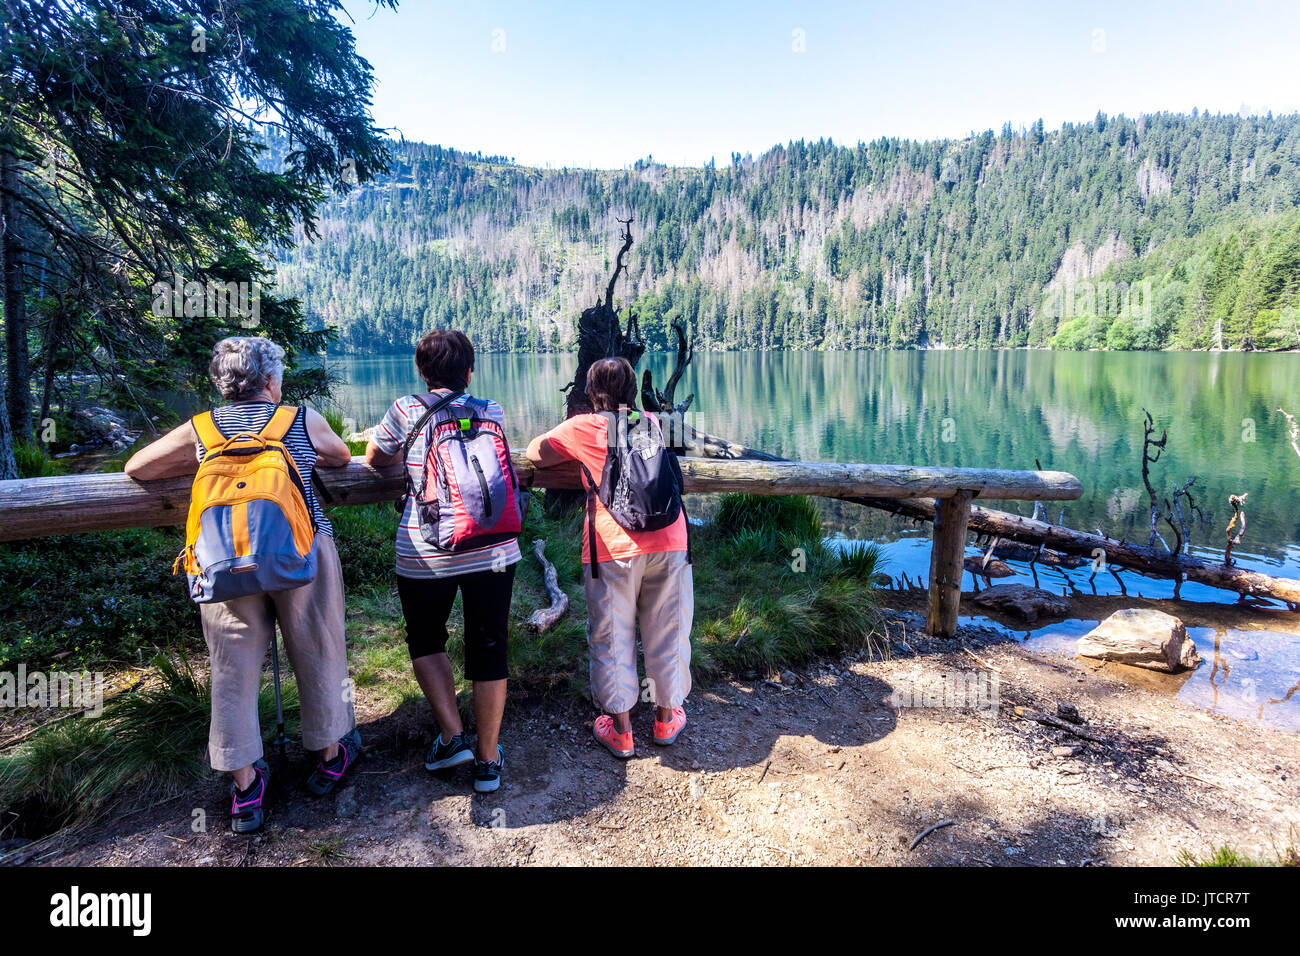 Aktives Altern, drei ältere Frauen, Senioren Touristen am Ufer des Schwarzen Sees, Sumava, Tschechische Republik Tschechische Berge Senioren gesunde Lebensweise Stockfoto